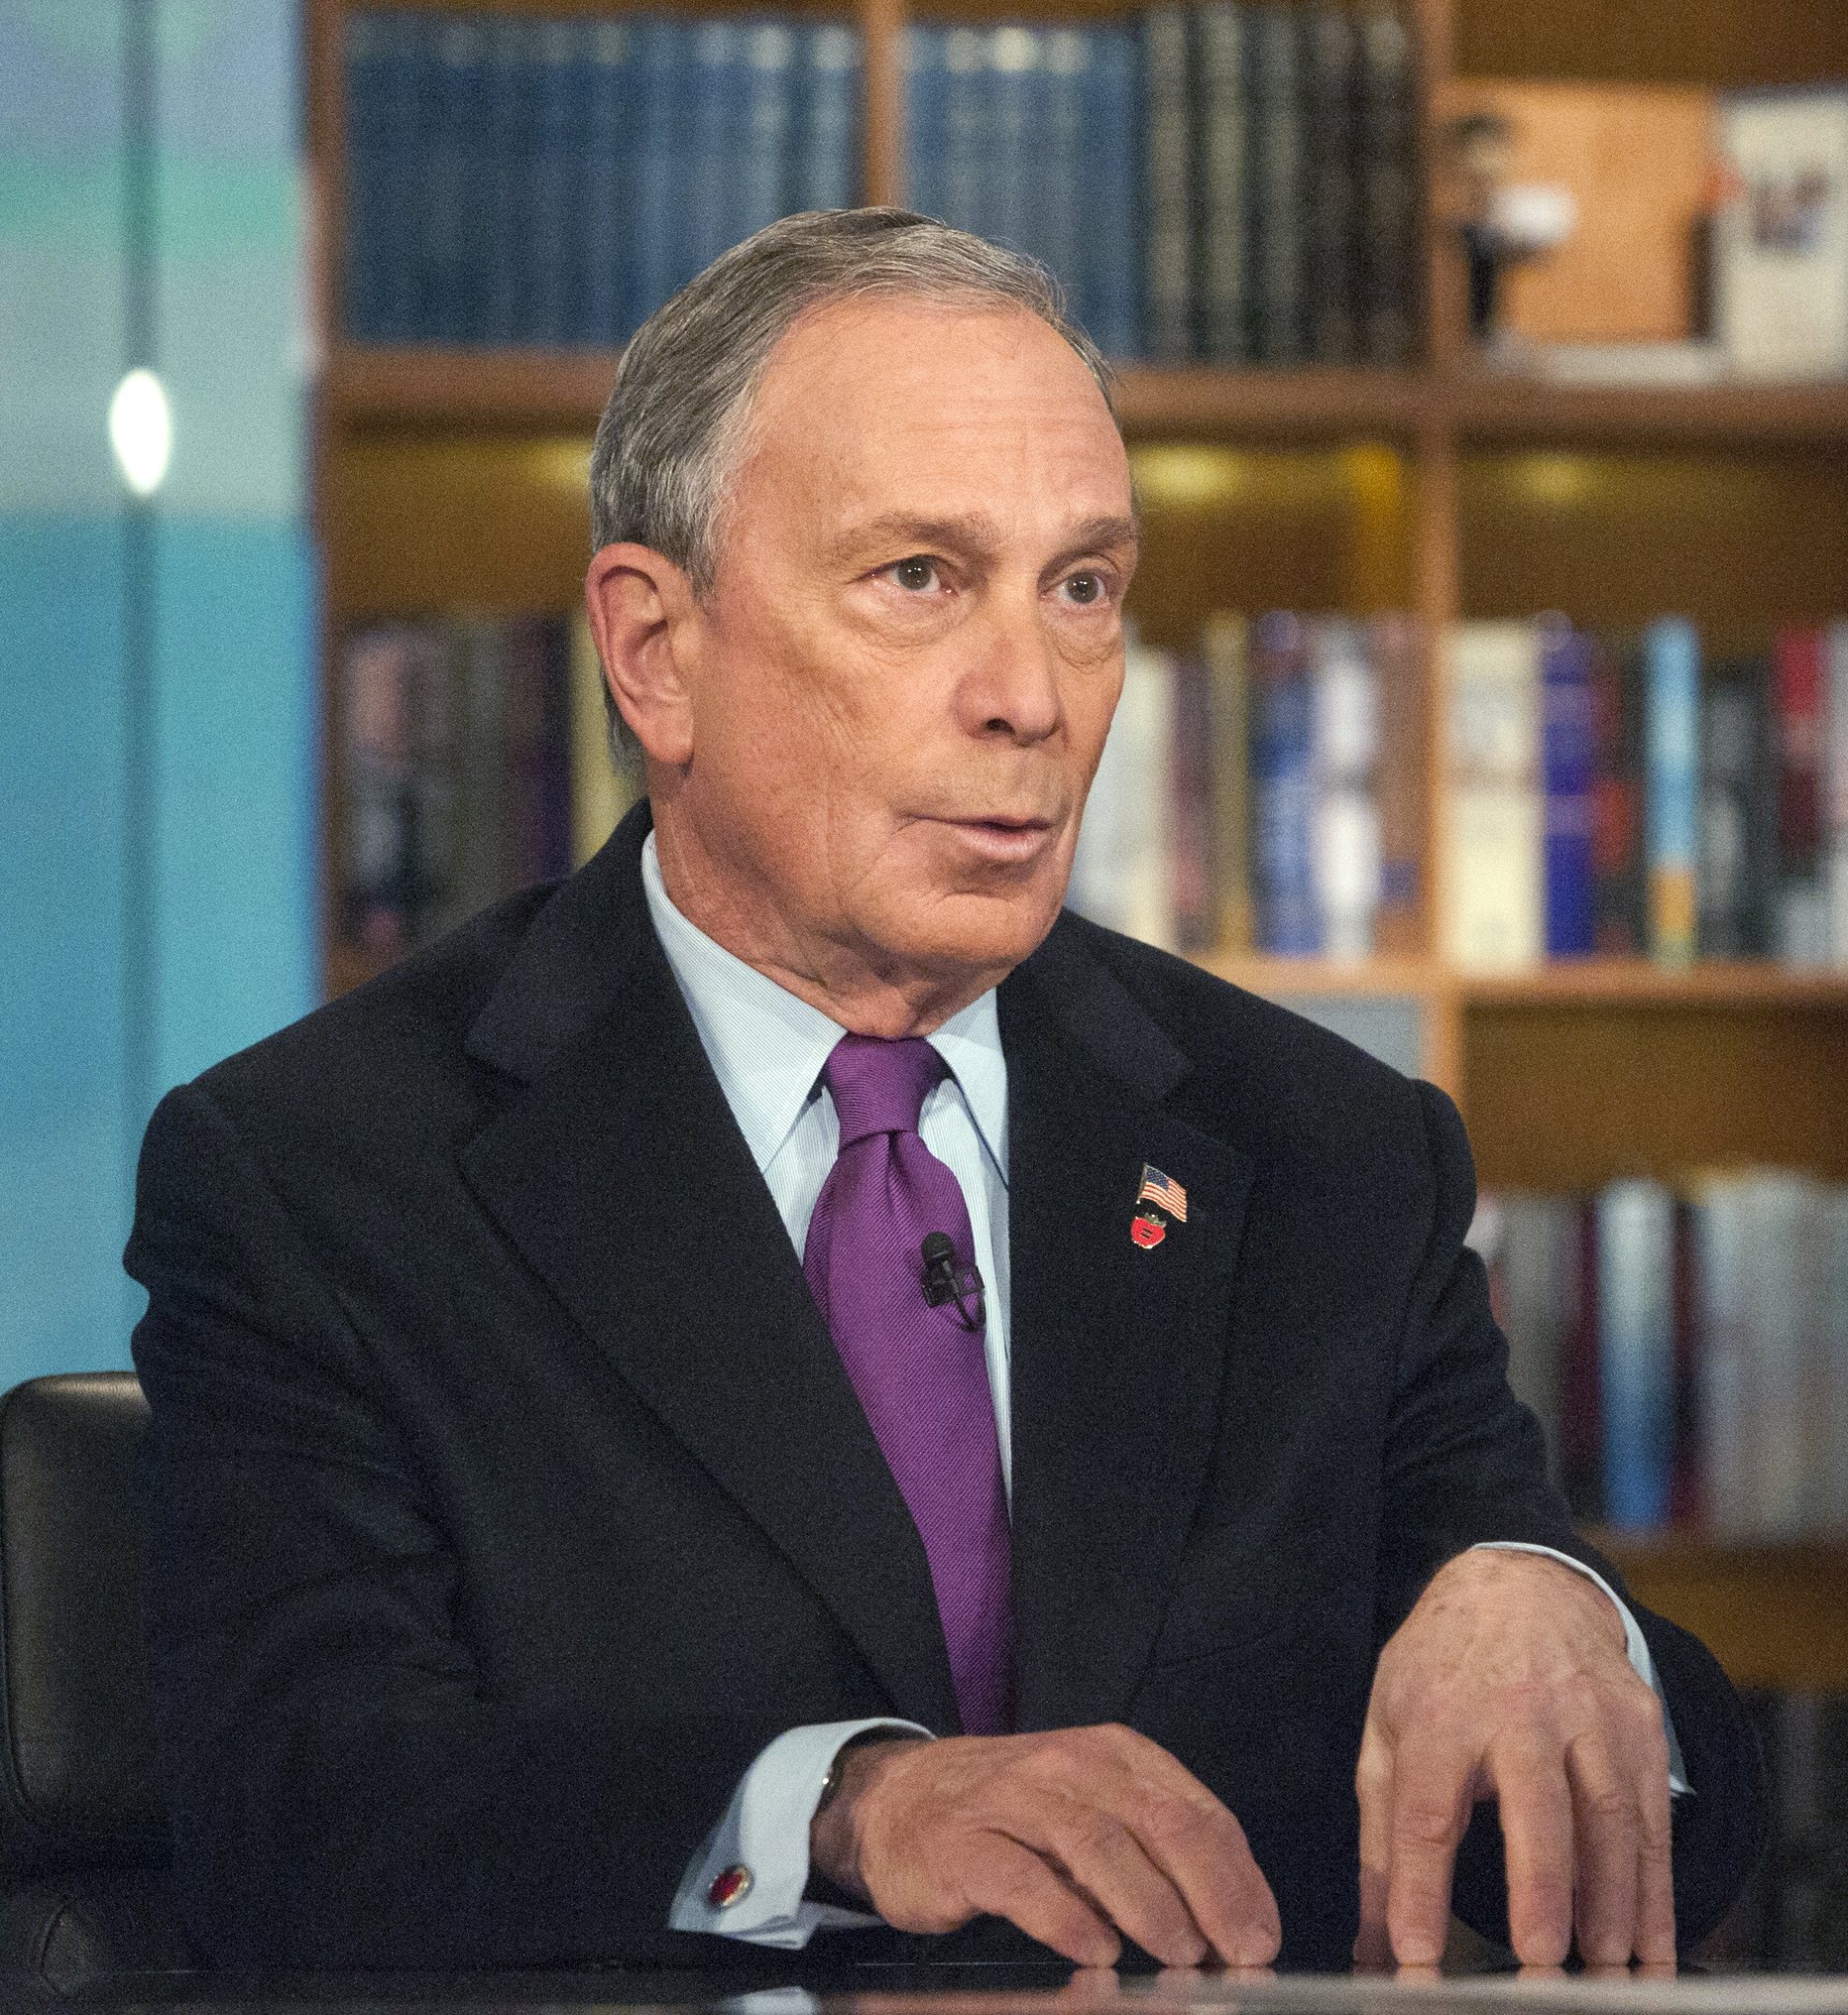 Bland ledande politiker är det bara New Yorks borgmästare, Michael Bloomberg, tidigare republikan, som menar att massakern är en "fruktansvärd påminnelse" om att vapenlagarna behöver stramas åt.